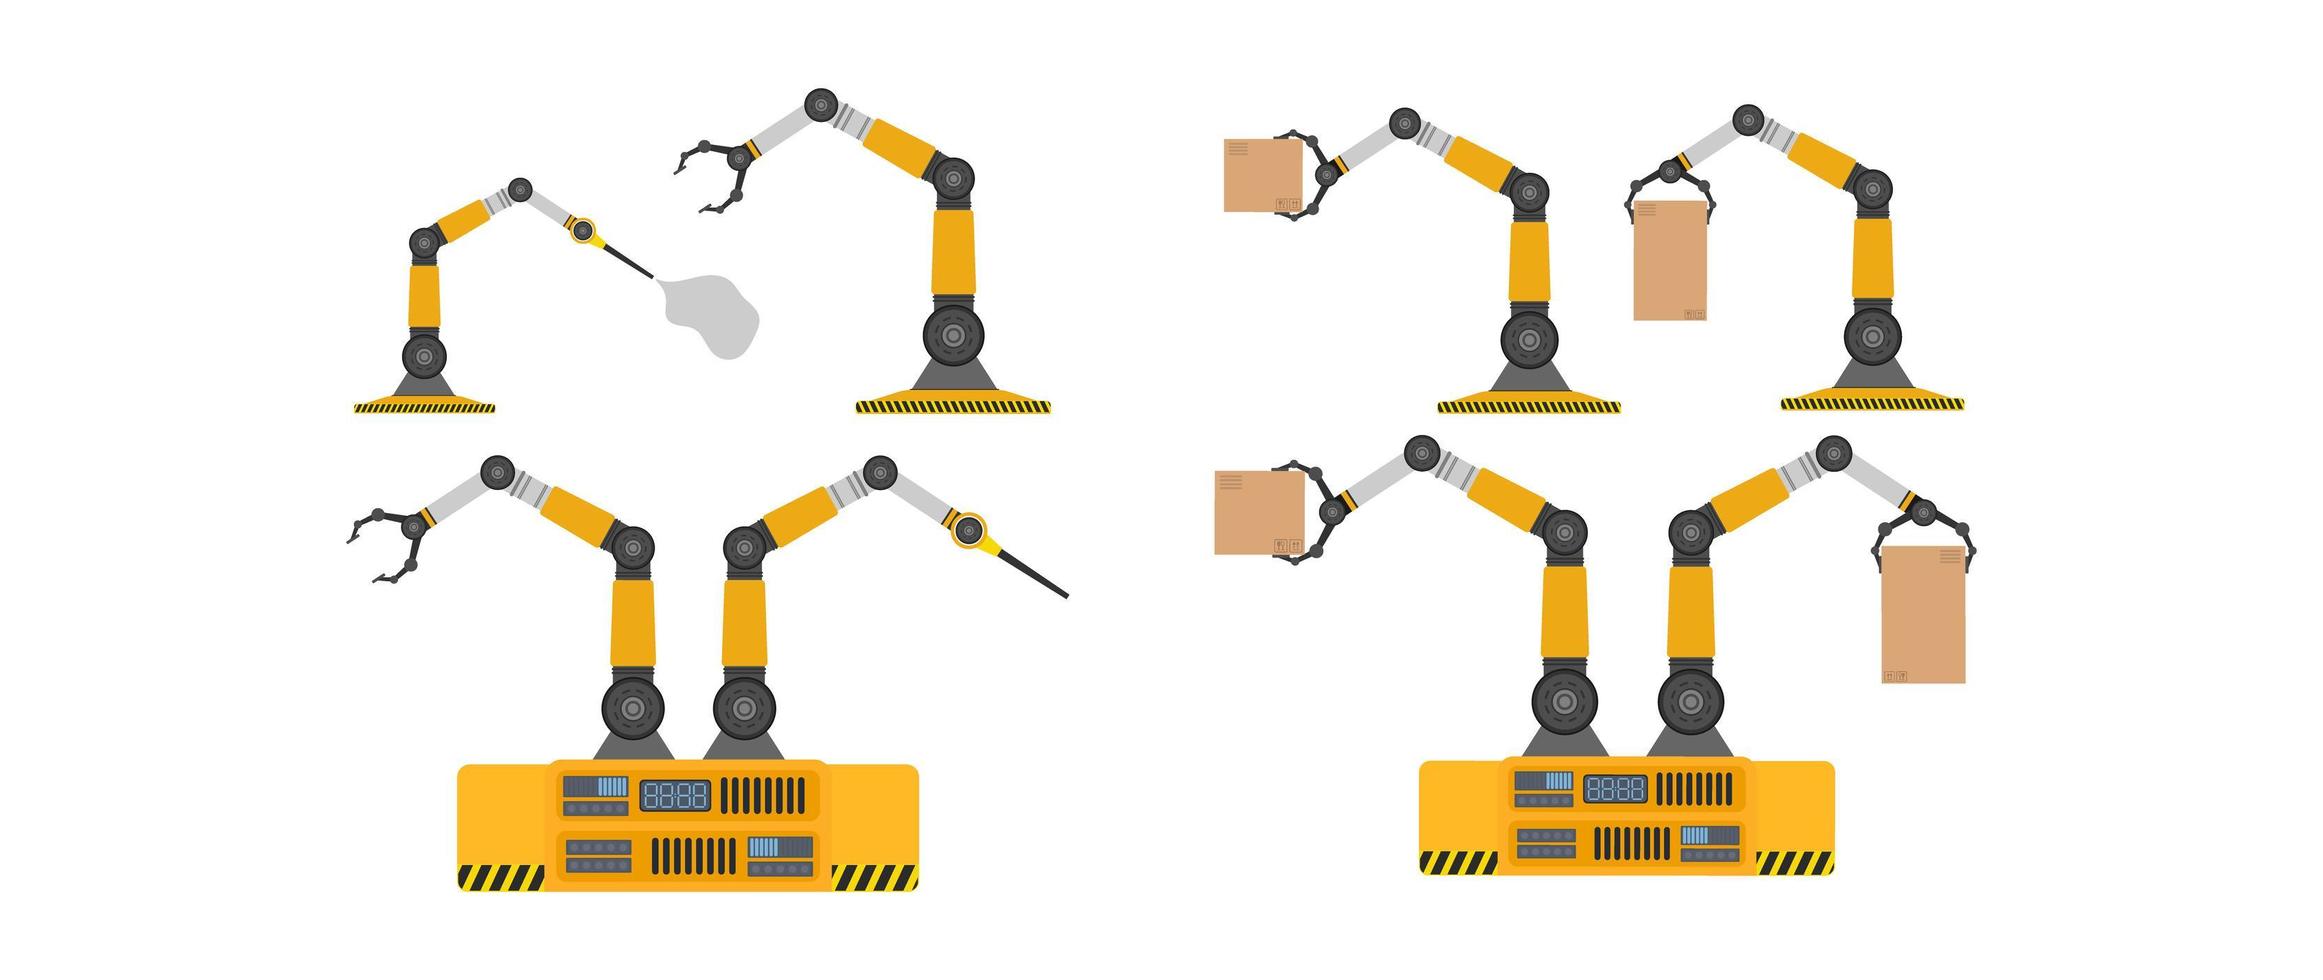 conjunto de robots mecánicos con cajas. brazo robótico industrial levanta una carga. tecnología industrial moderna. electrodomésticos para empresas manufactureras. aislado. vector. vector